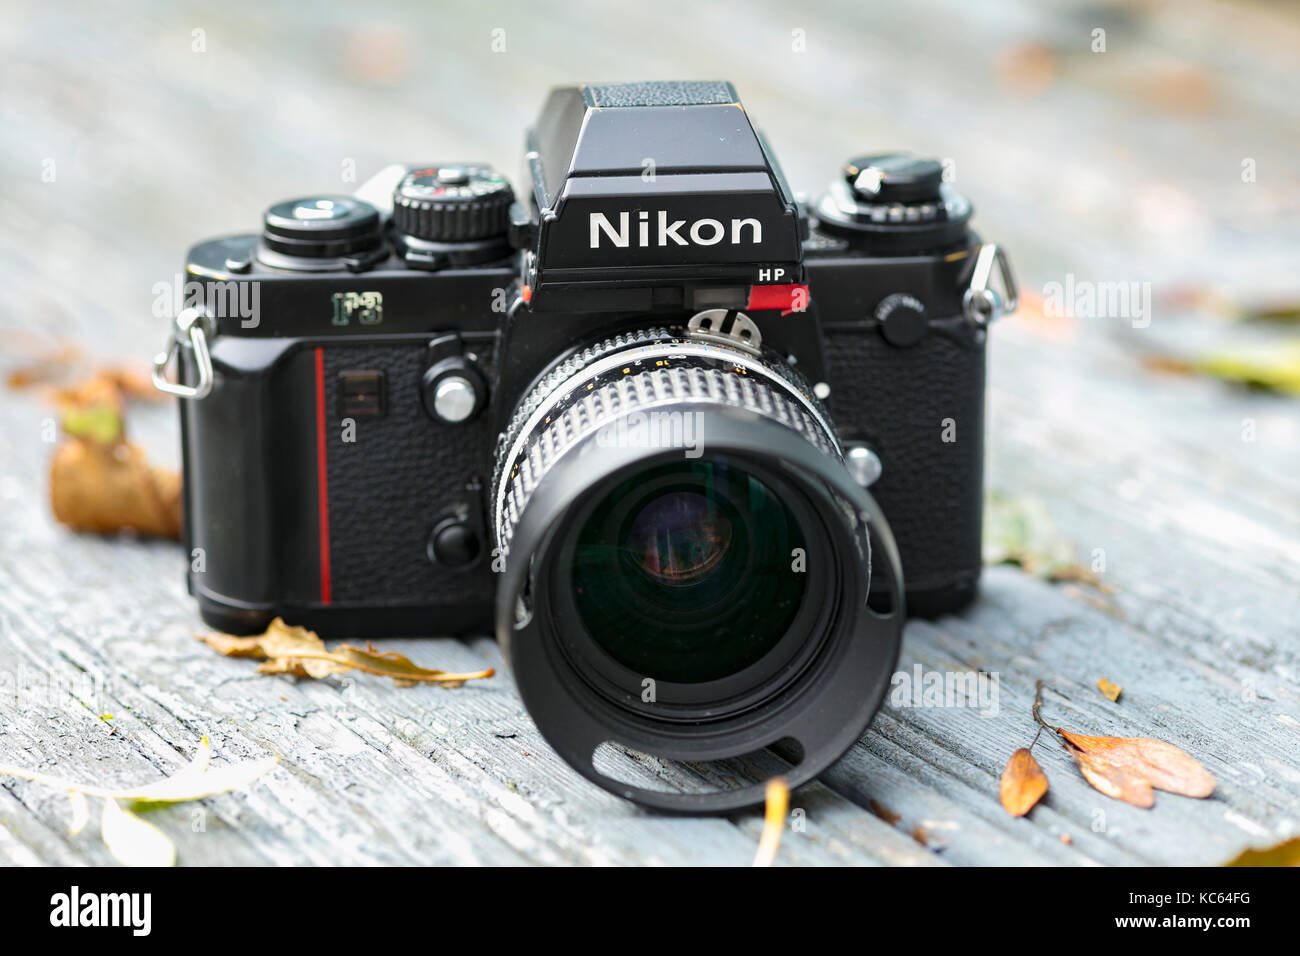 Nikon F3 reflex a lente singola 35mm Pellicola professionale fotocamera, lanciata per la prima volta nel 1980 e rimase in produzione fino al 2001. Foto Stock